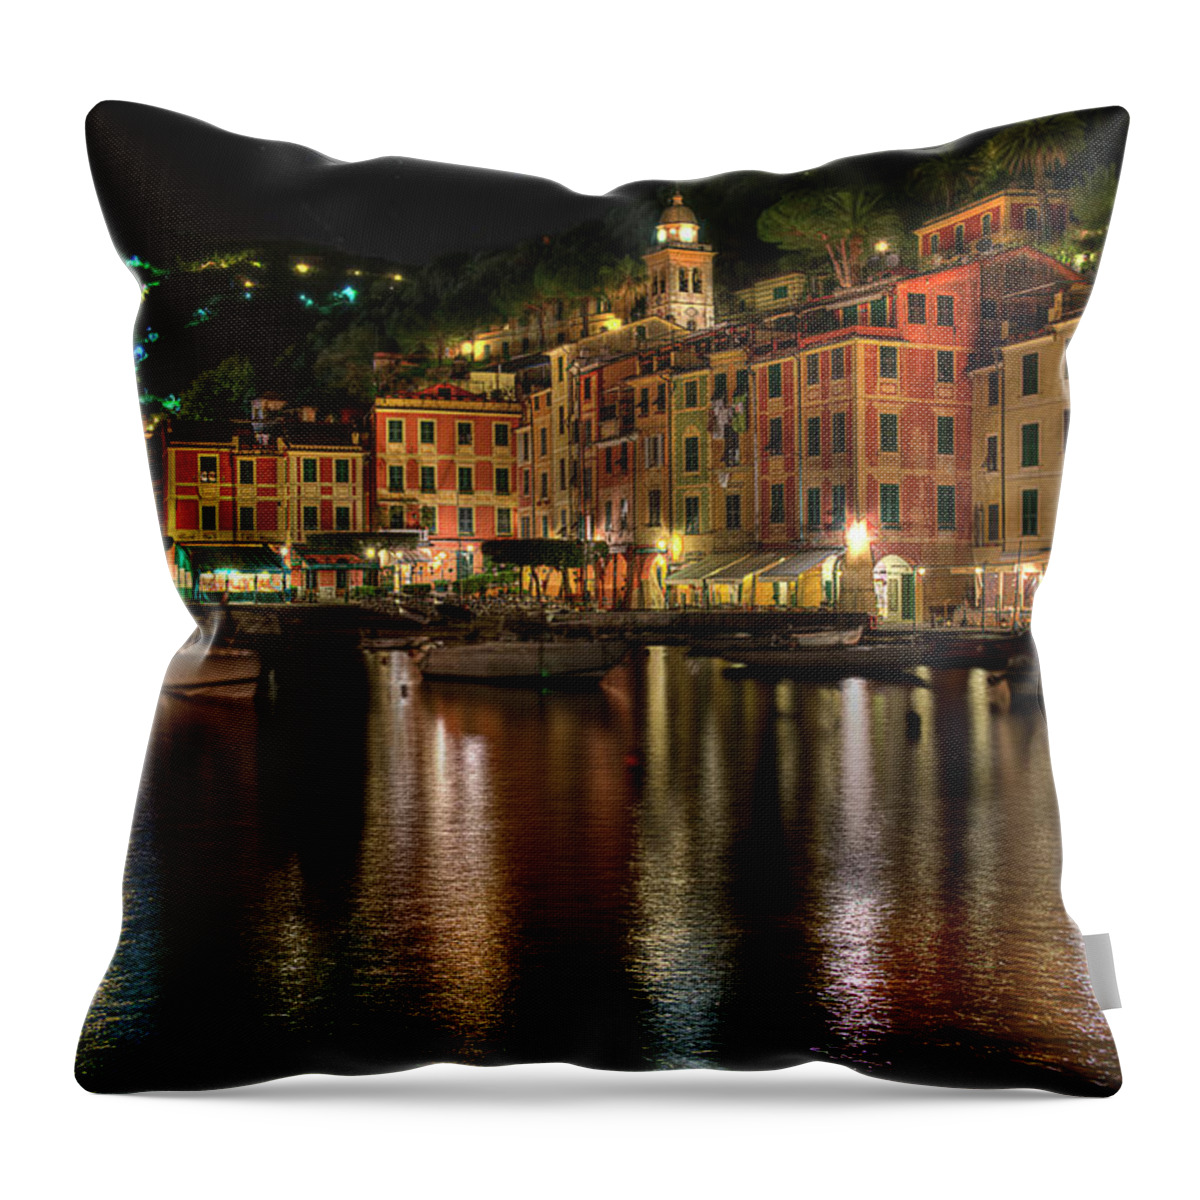 Portofino Throw Pillow featuring the photograph PORTOFINO BAY BY NIGHT II - Notte sulla baia di Portofino II by Enrico Pelos